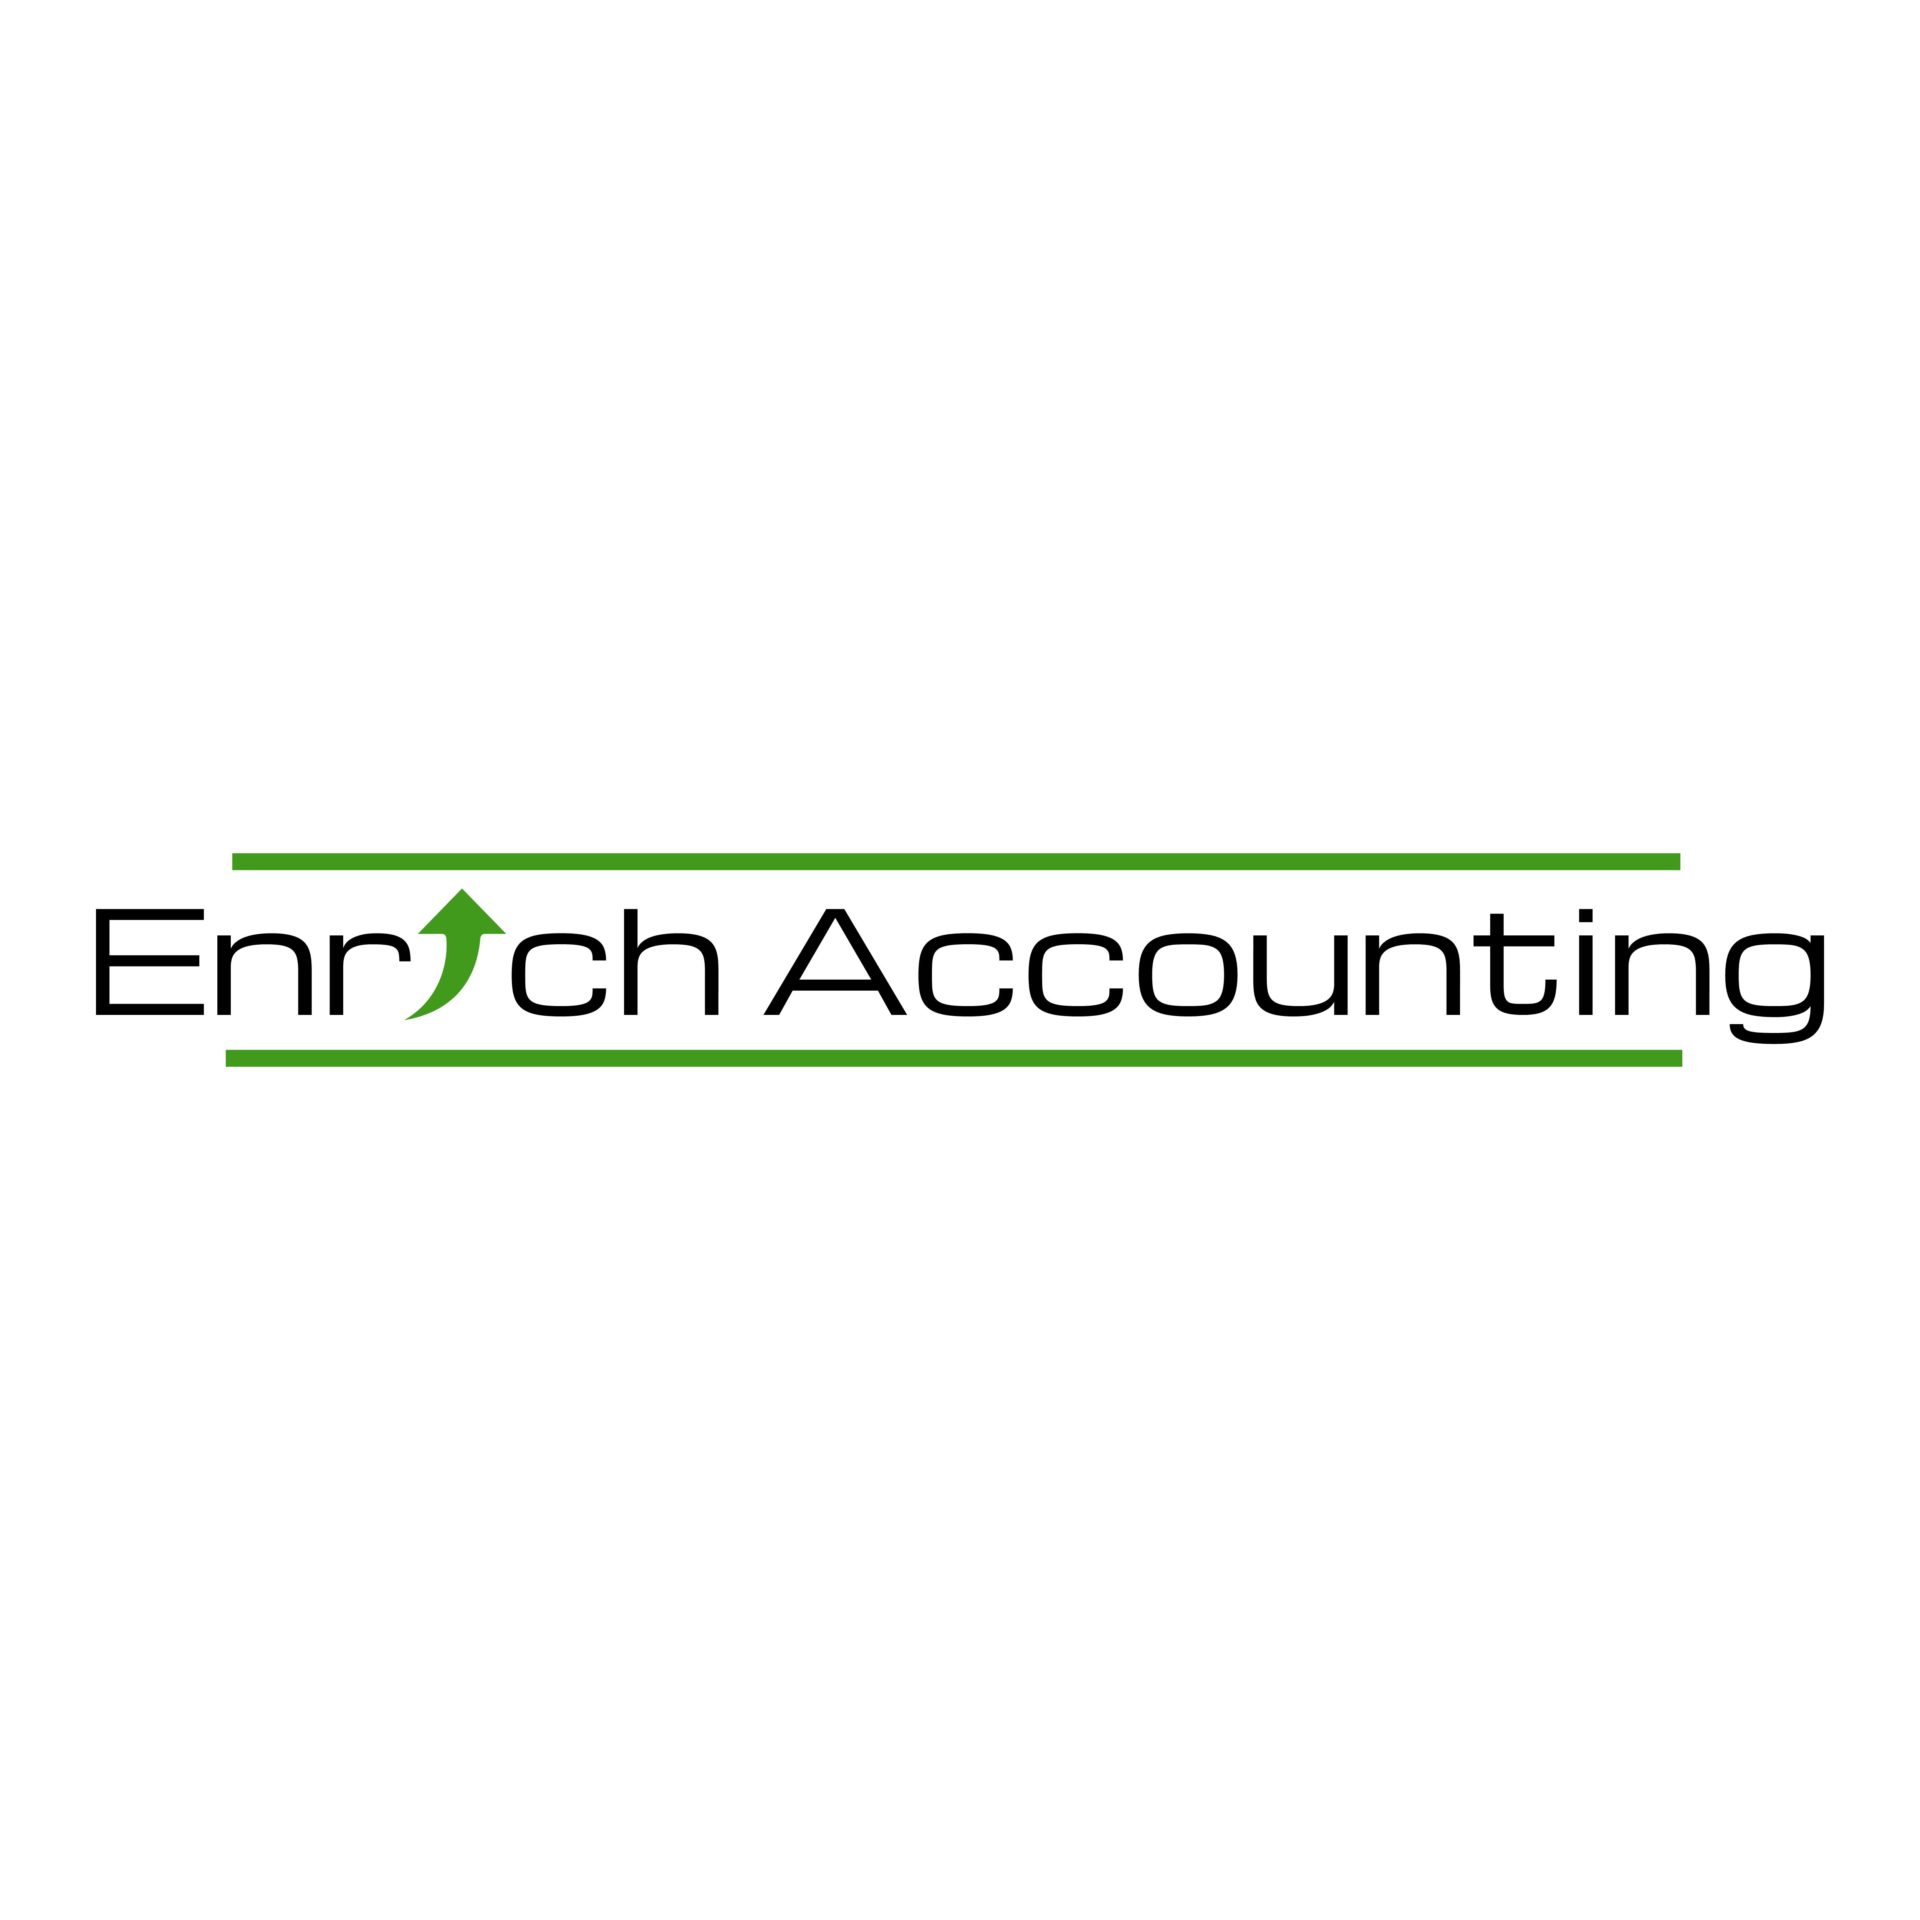 Enrich Accounting Ltd